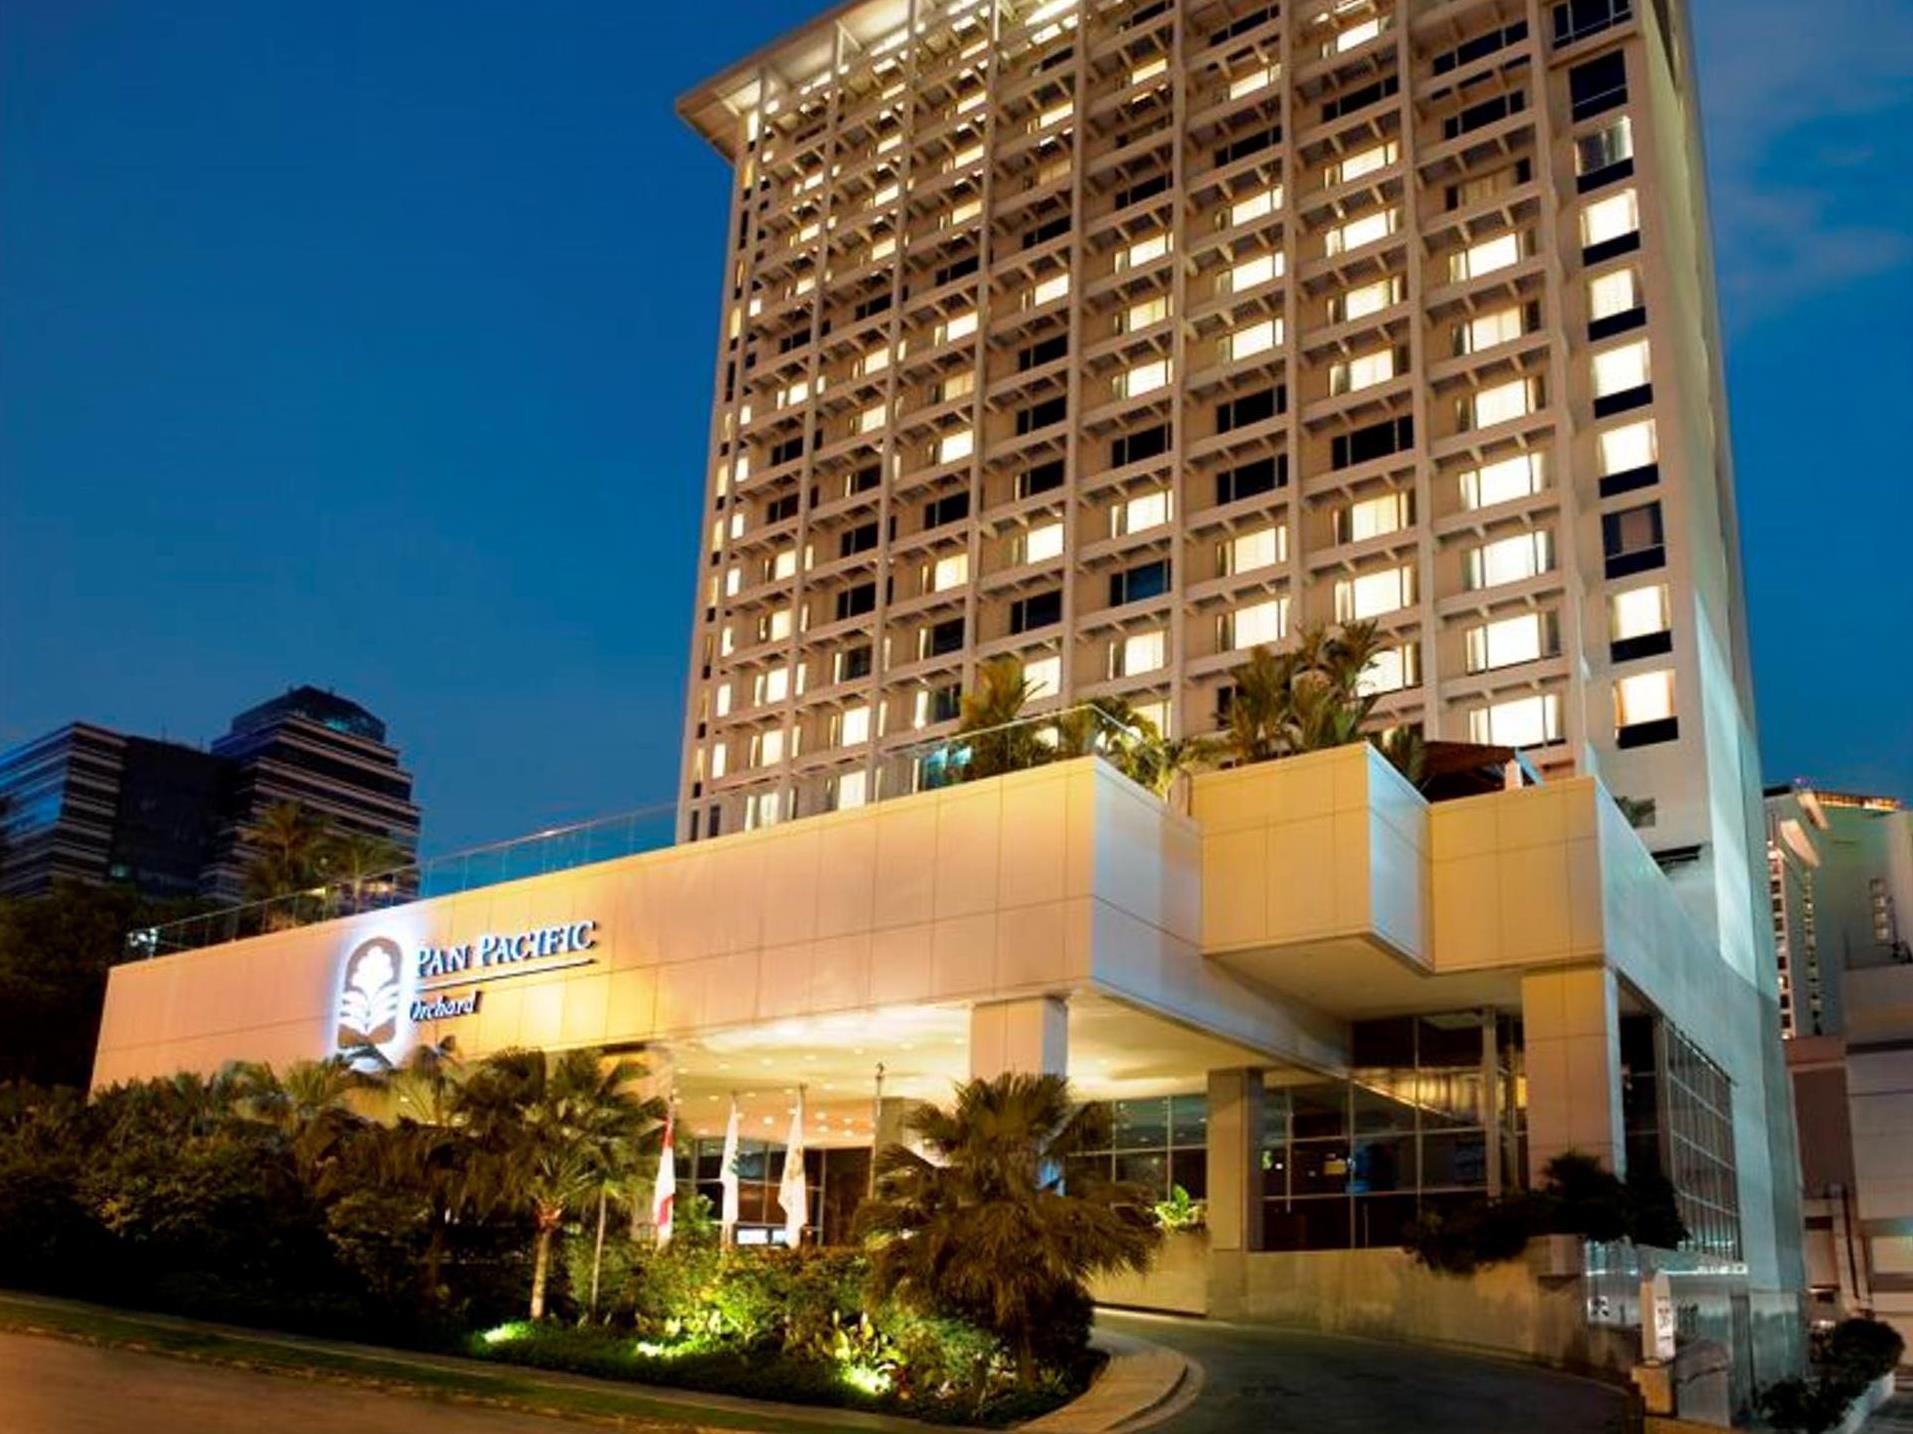 هتل پن پسفیک ارچارد Pan Pacific Orchard سنگاپور 